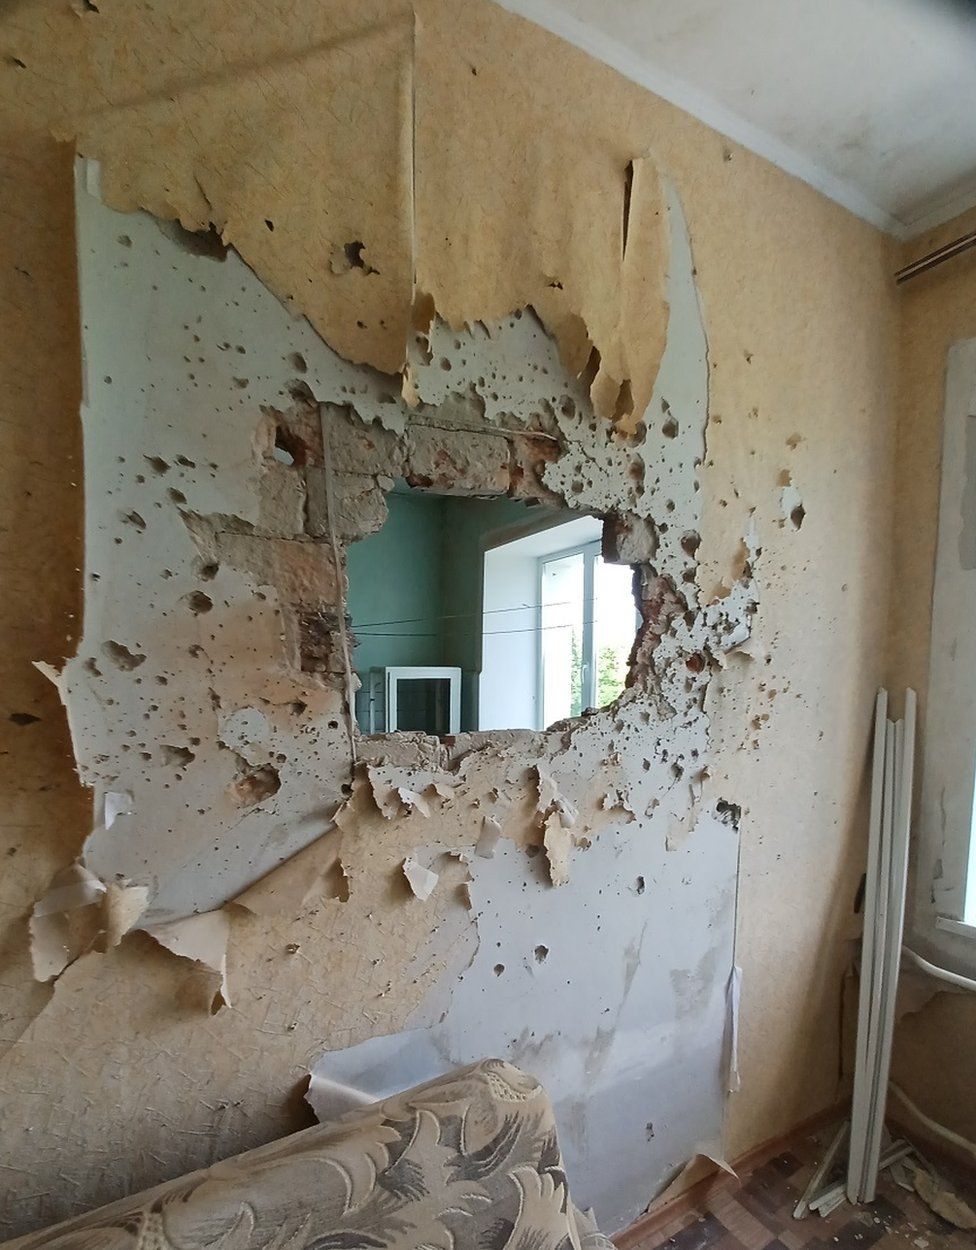 War damage in Ukraine